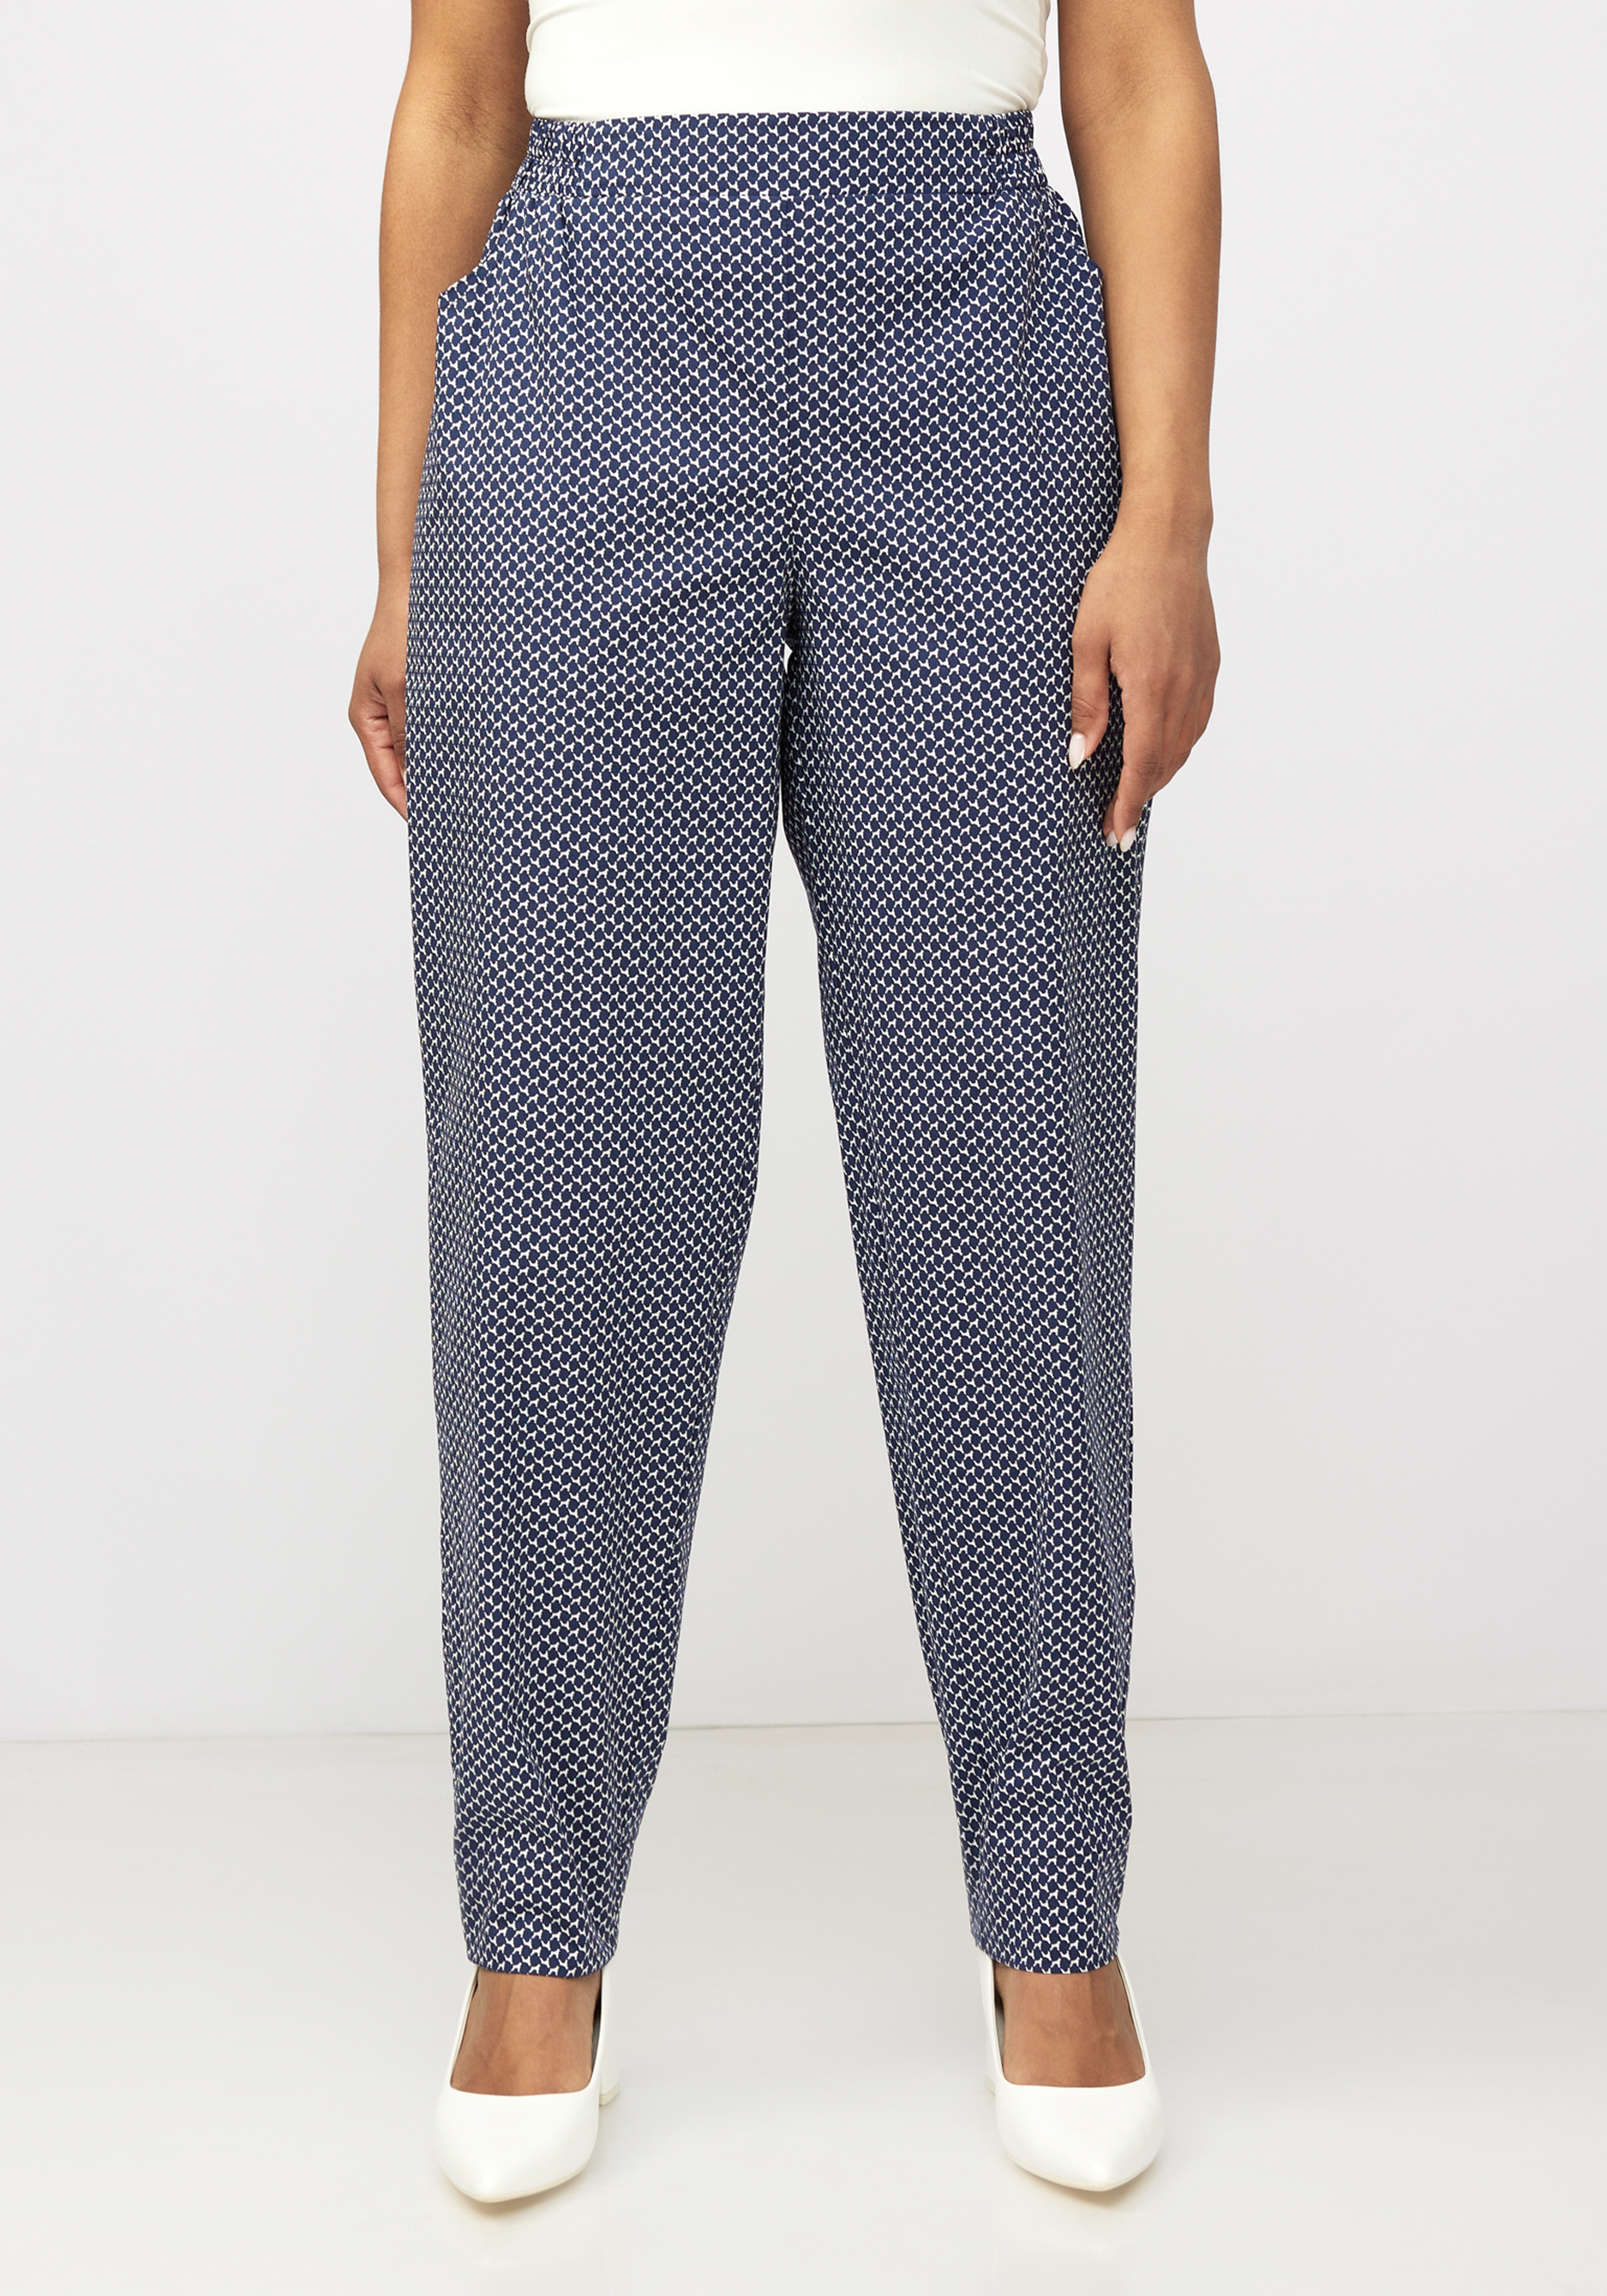 Хлопковые брюки "Бернадет" Averi, размер 54, цвет синий - фото 4